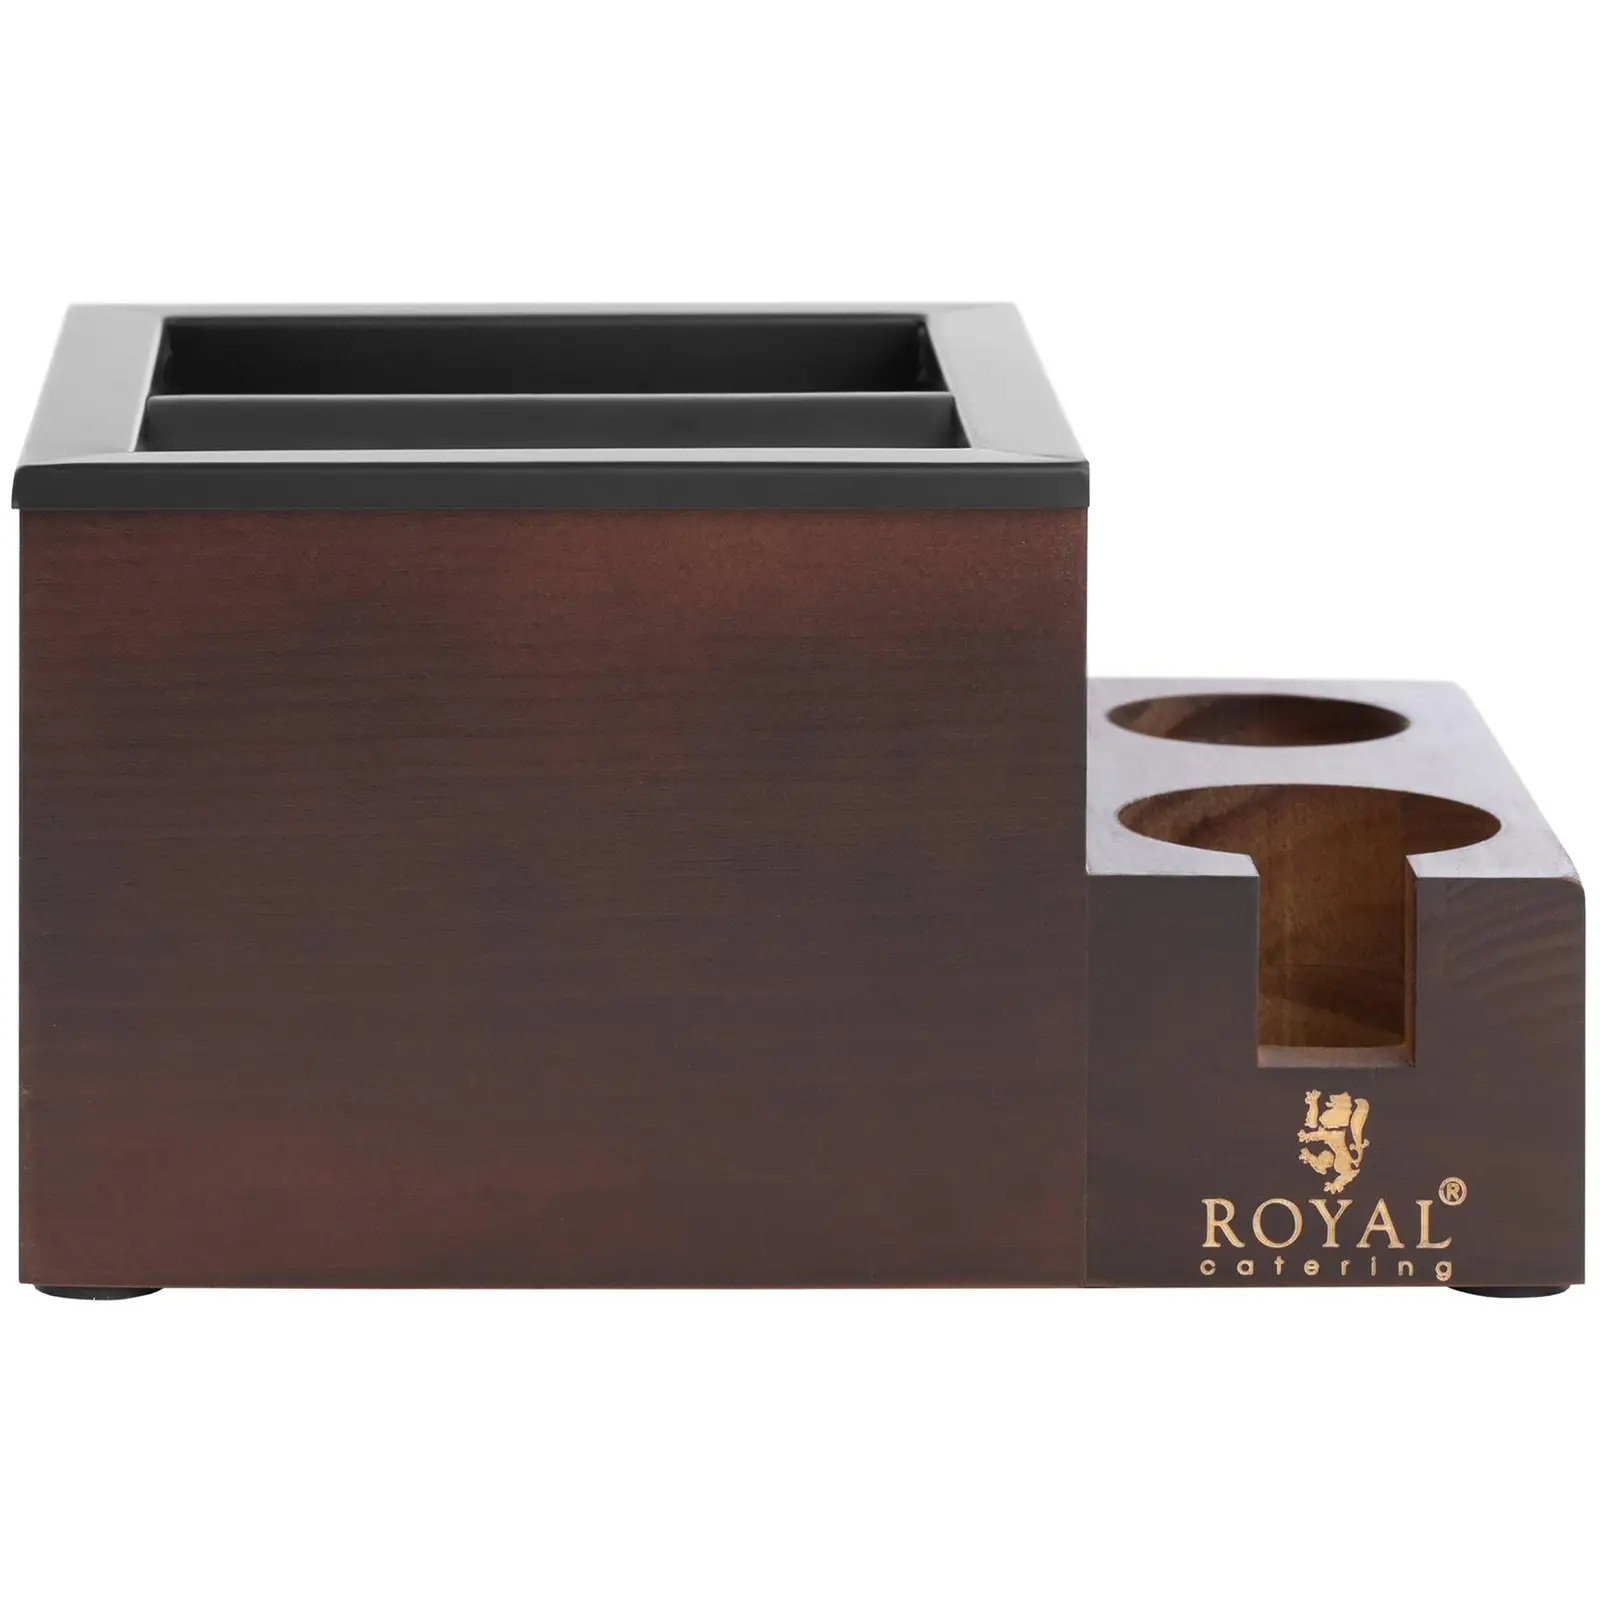 Knockbox - Rostfritt stål/trä - 3,1 L - Med bankstång och fack för tillbehör - Royal Catering